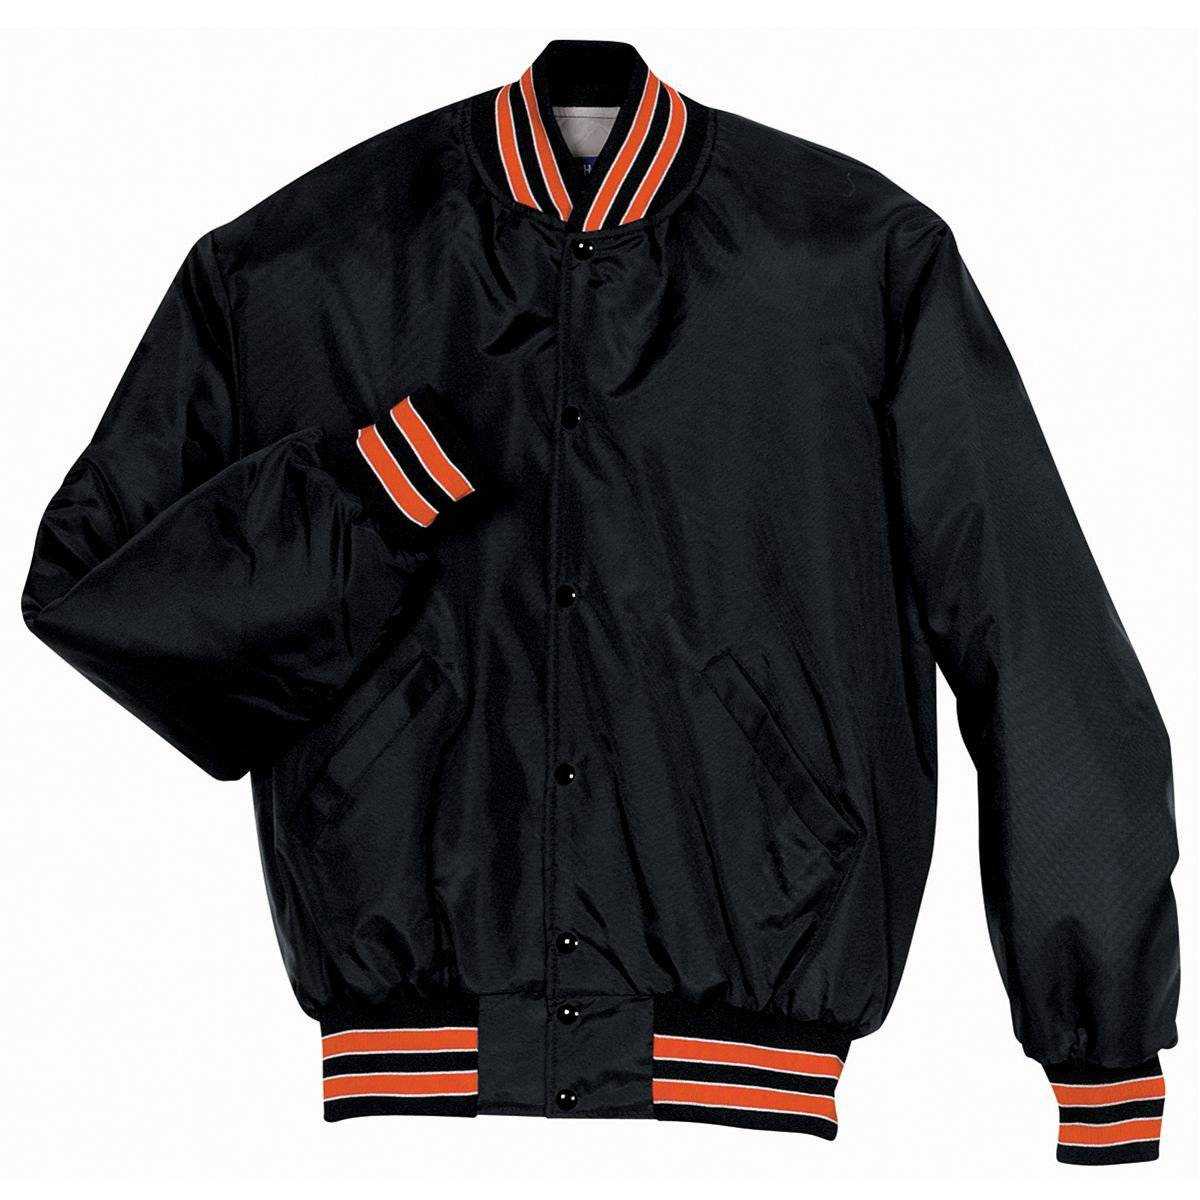 Holloway 229140 Heritage Jacket - Black Orange White - HIT a Double